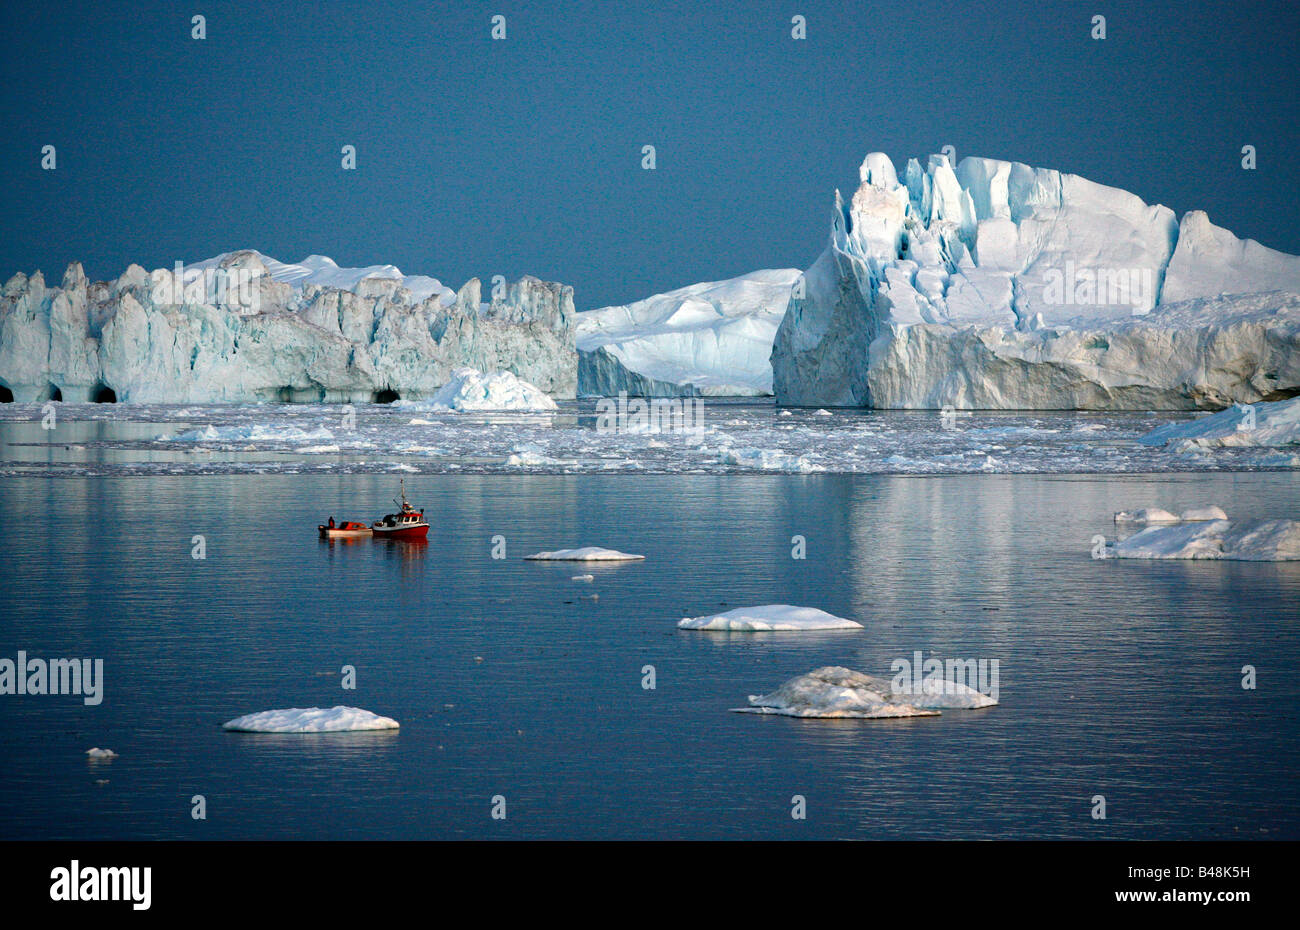 Août 2008 - bateau de pêche par le Glacier Kangerlua Ilulissat Sermeq Kujalleq également connu sous le nom de la baie de Disko au Groenland Banque D'Images